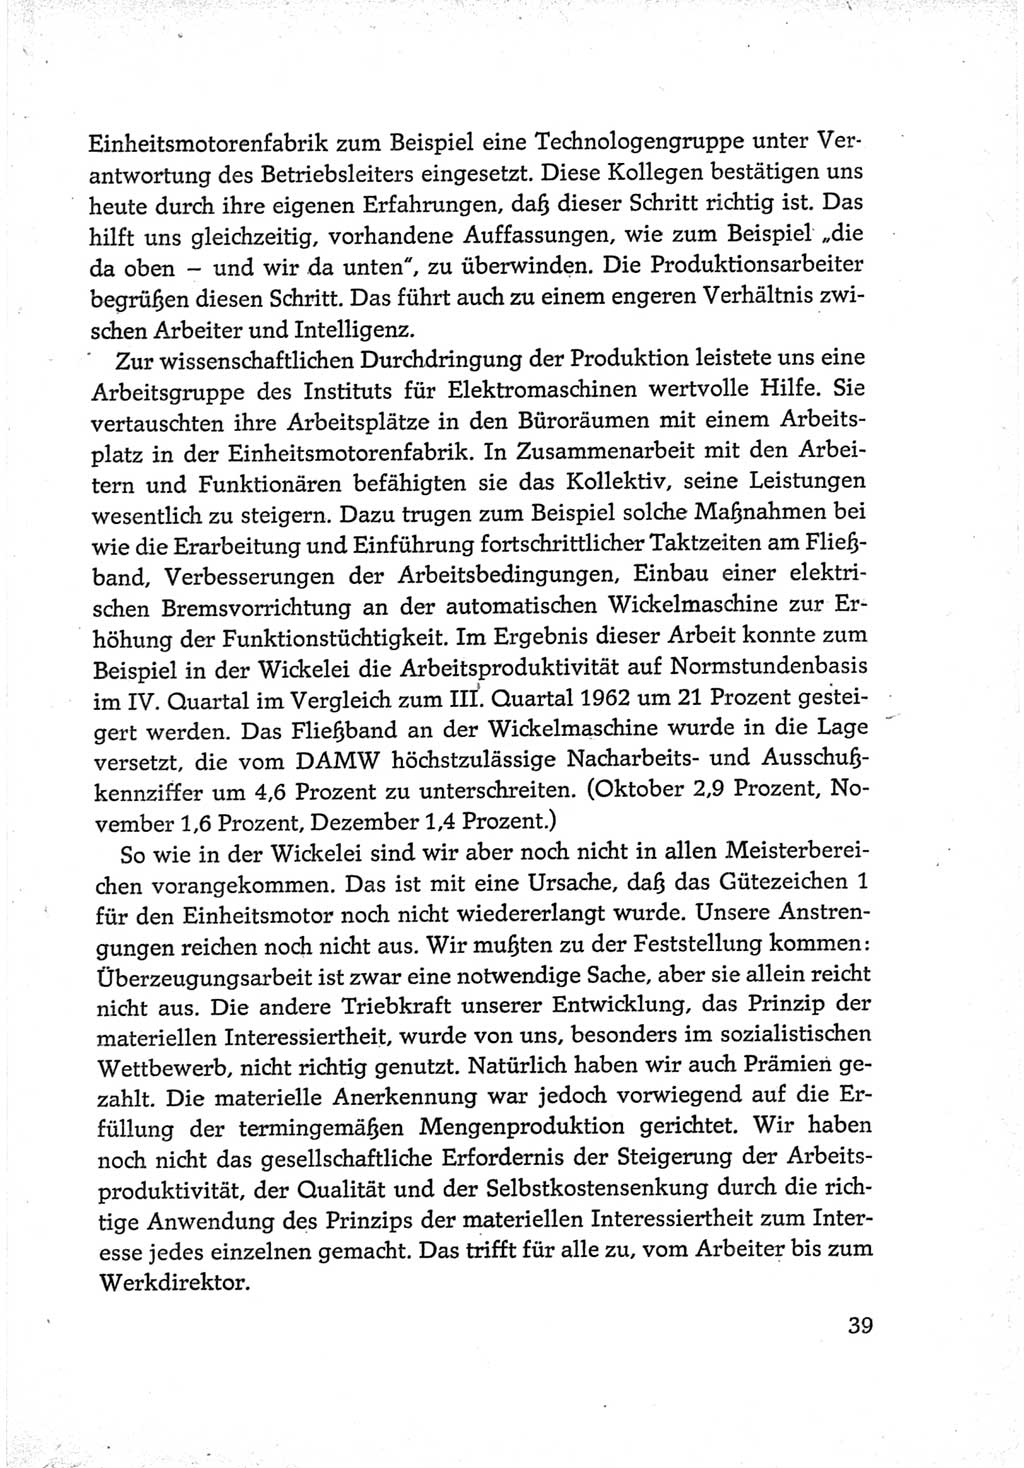 Protokoll der Verhandlungen des Ⅵ. Parteitages der Sozialistischen Einheitspartei Deutschlands (SED) [Deutsche Demokratische Republik (DDR)] 1963, Band Ⅲ, Seite 39 (Prot. Verh. Ⅵ. PT SED DDR 1963, Bd. Ⅲ, S. 39)